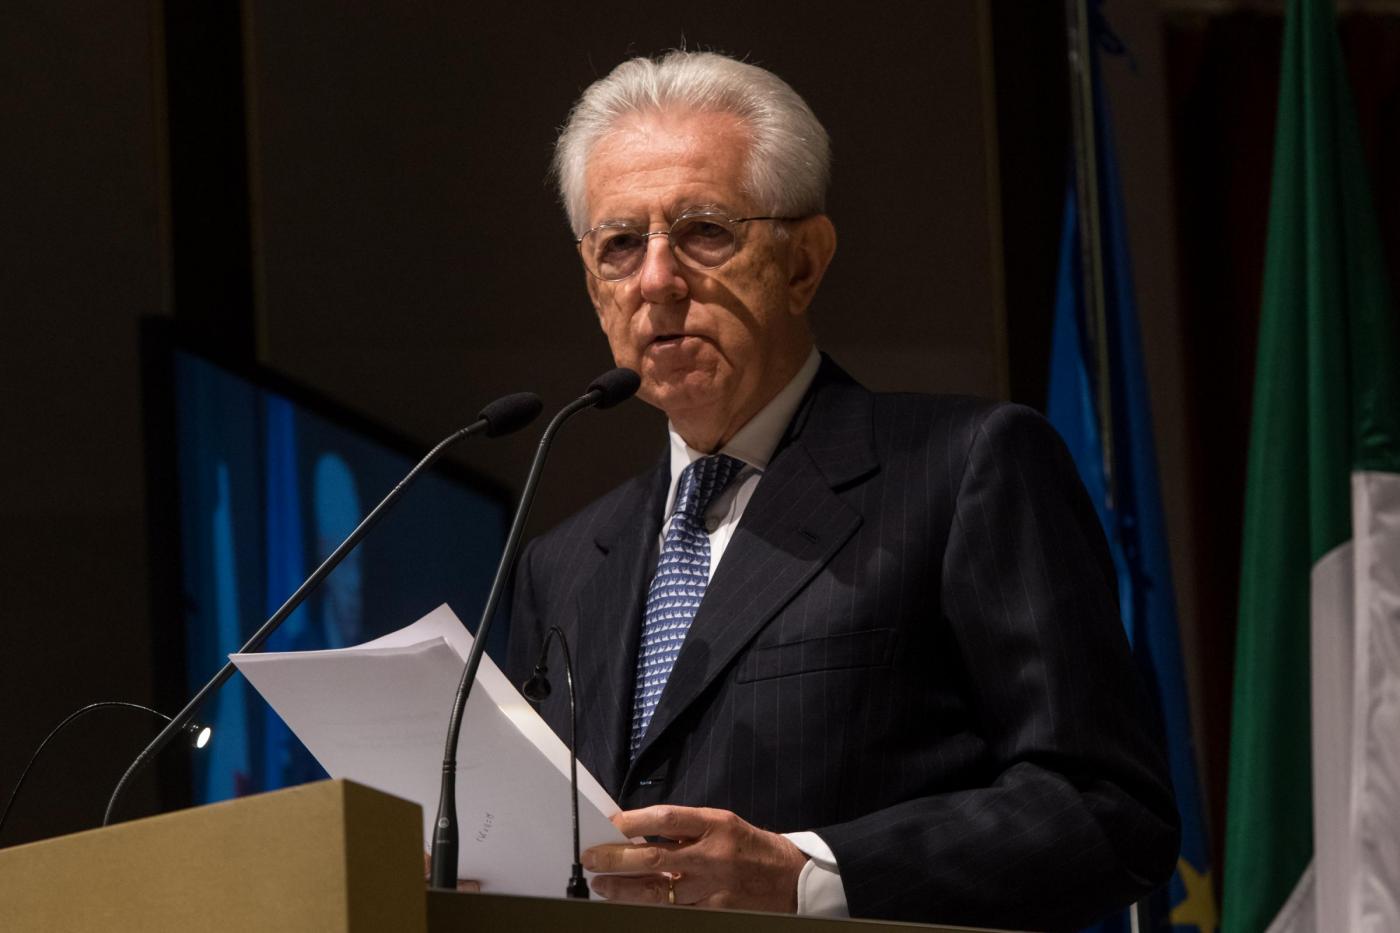 Referendum, Mario Monti spiega perché voterà No